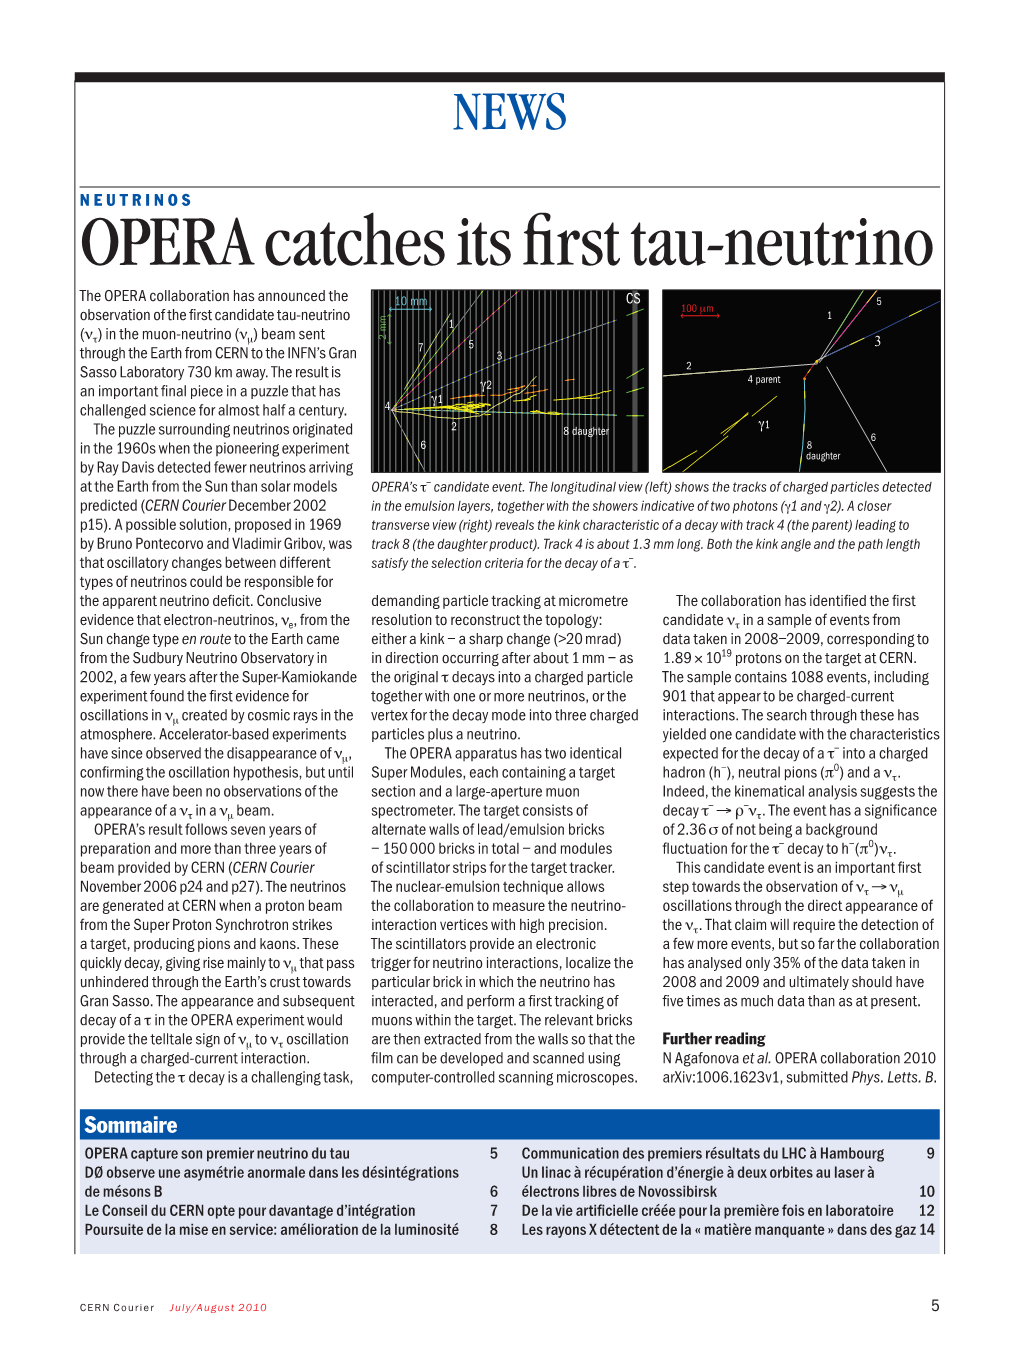 OPERA Catches Its First Tau-Neutrino